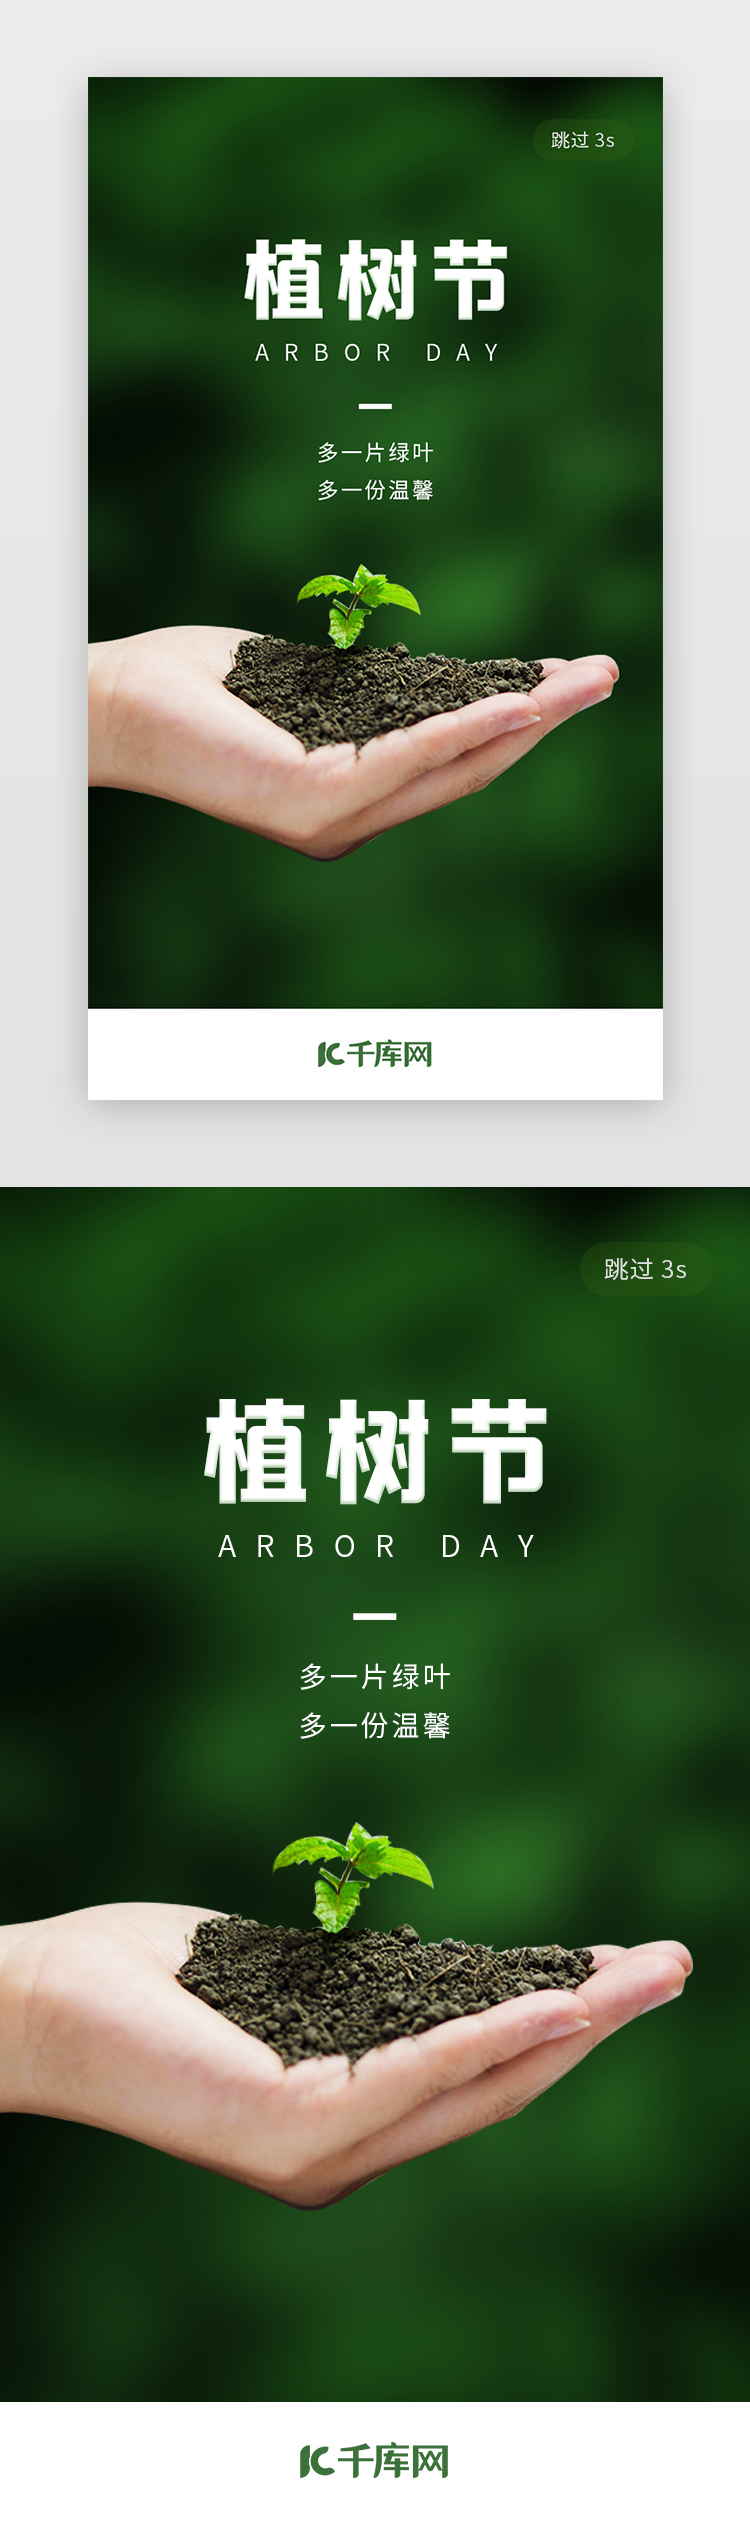 绿色植树节环保app闪屏环保图片